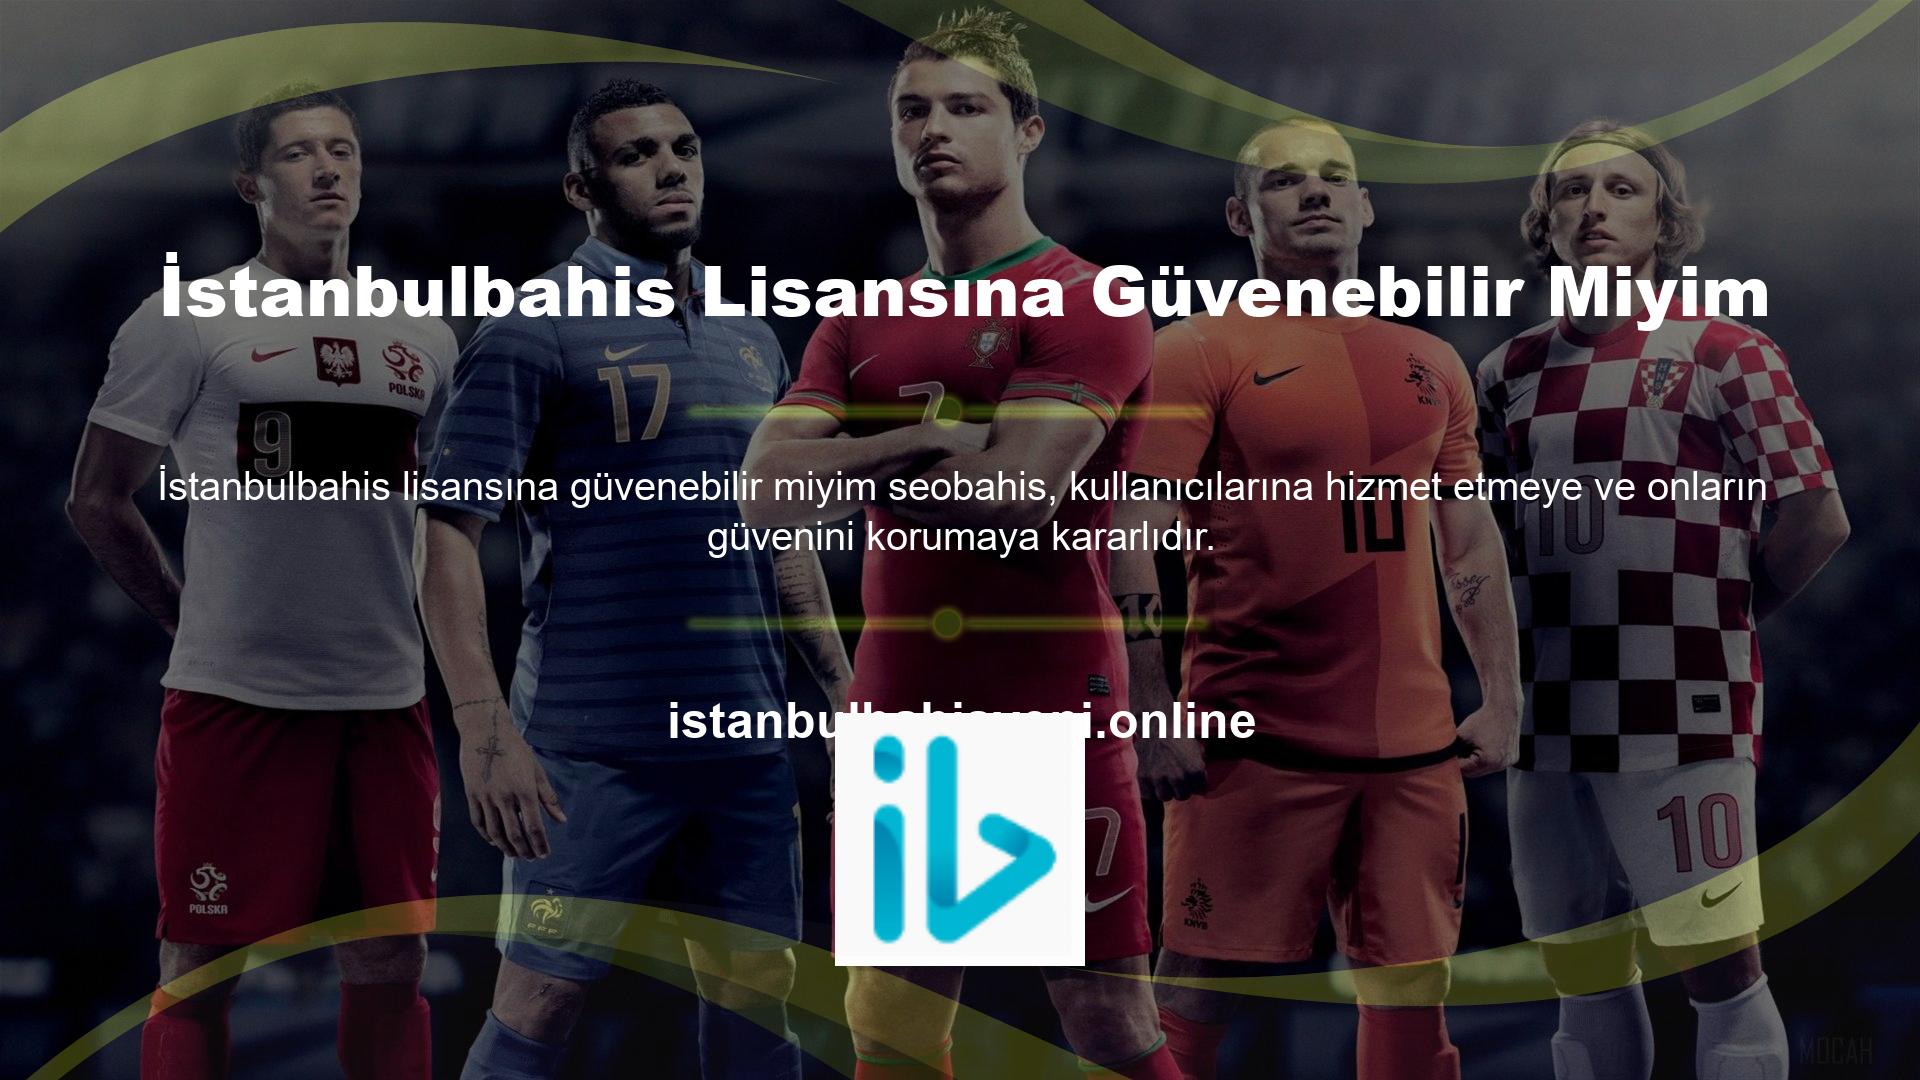 Türk oyun sitelerine adres girilmesi yasaktır